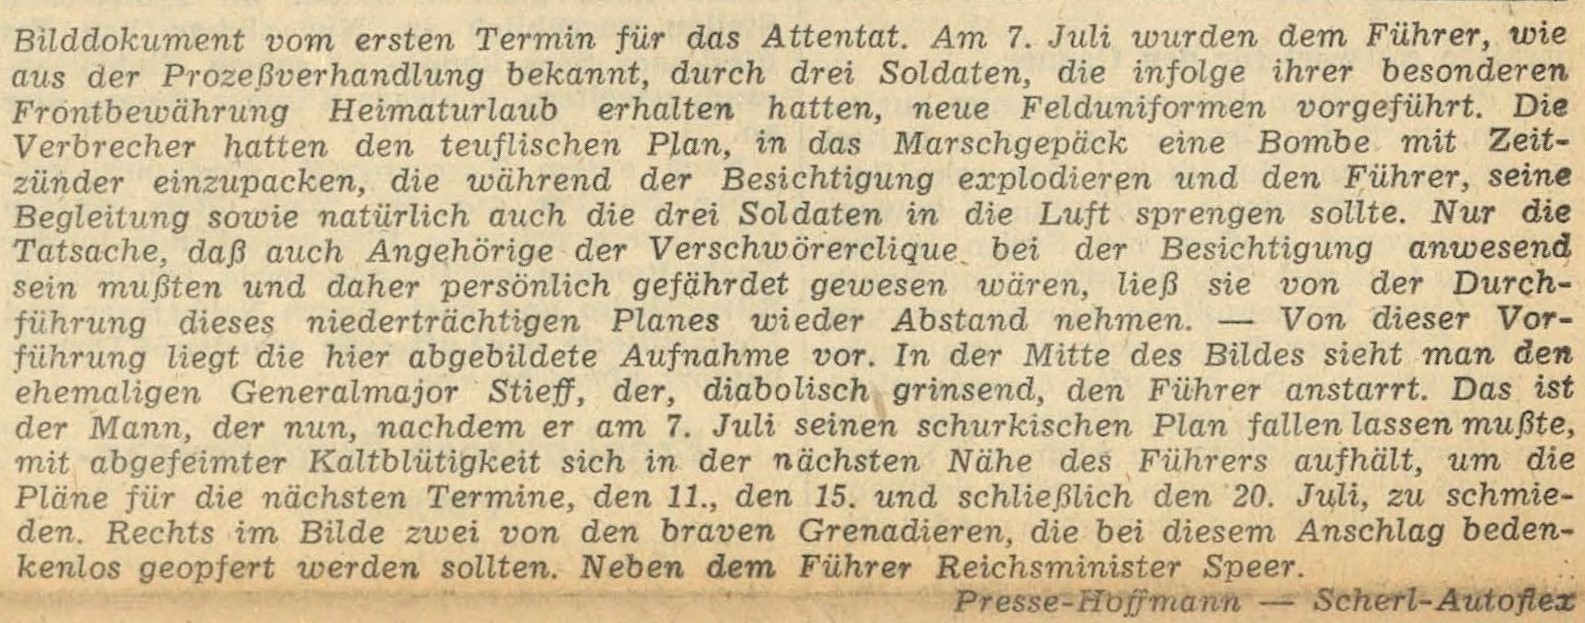 Textausschnitt aus einem Zeitungsartikel der Salzburger Zeitung